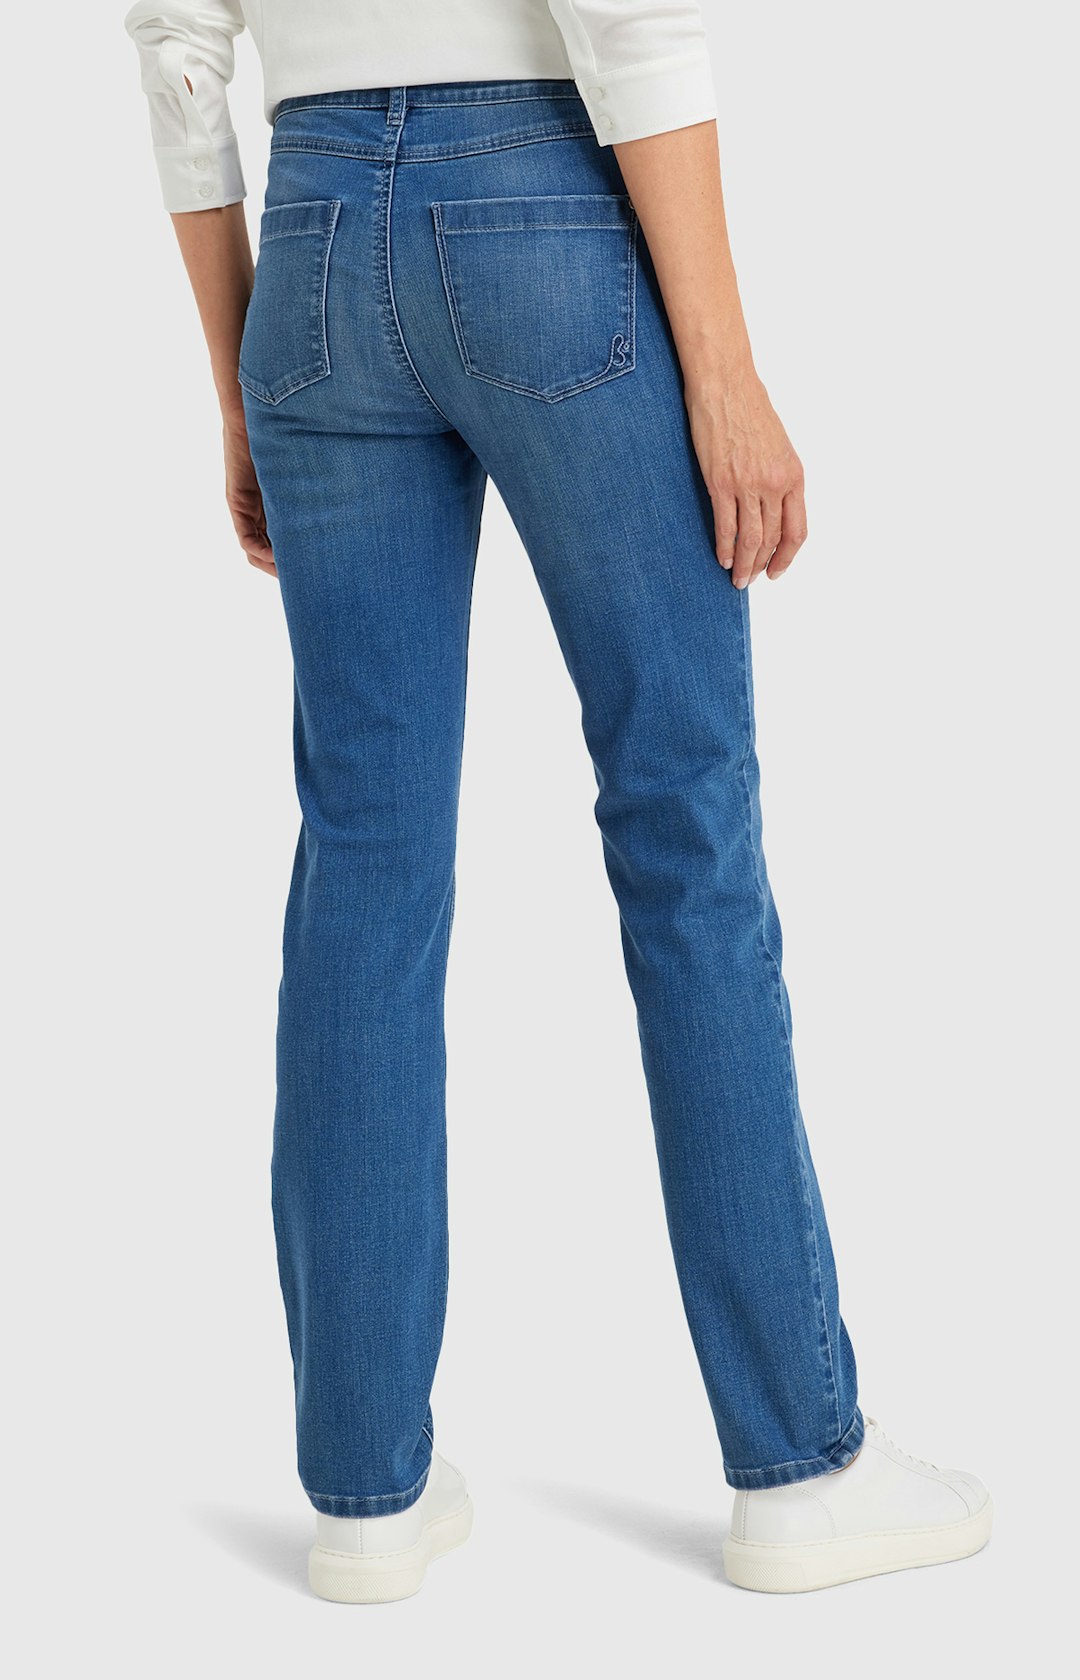 Jeans mit Strassbesatz